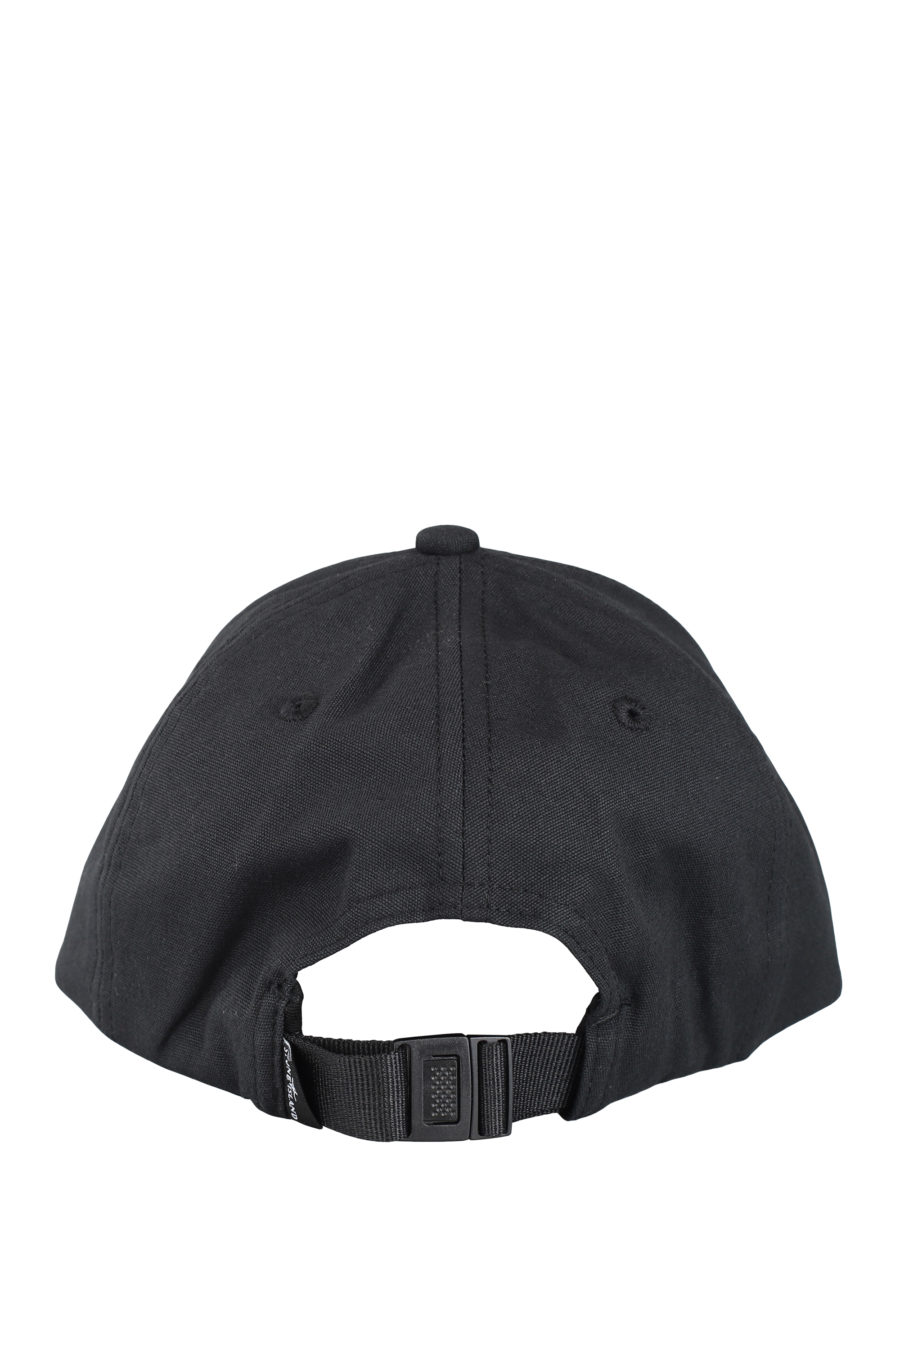 Gorra negra con logo parche - IMG 9711